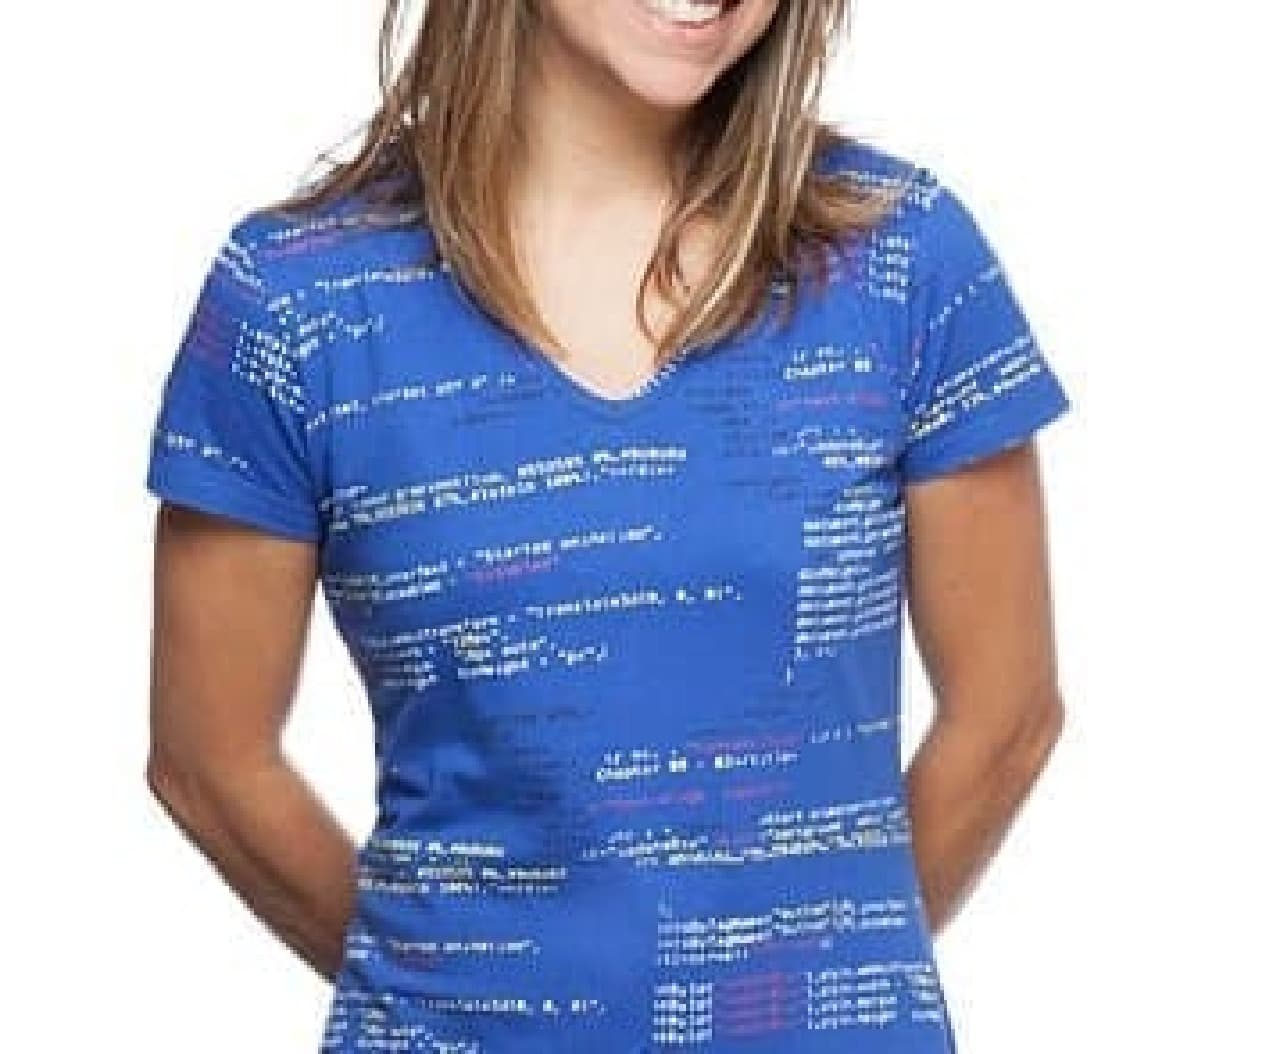 JavaScriptコードが書かれたドレス「JavaScript Code Fit & Flare Dress」